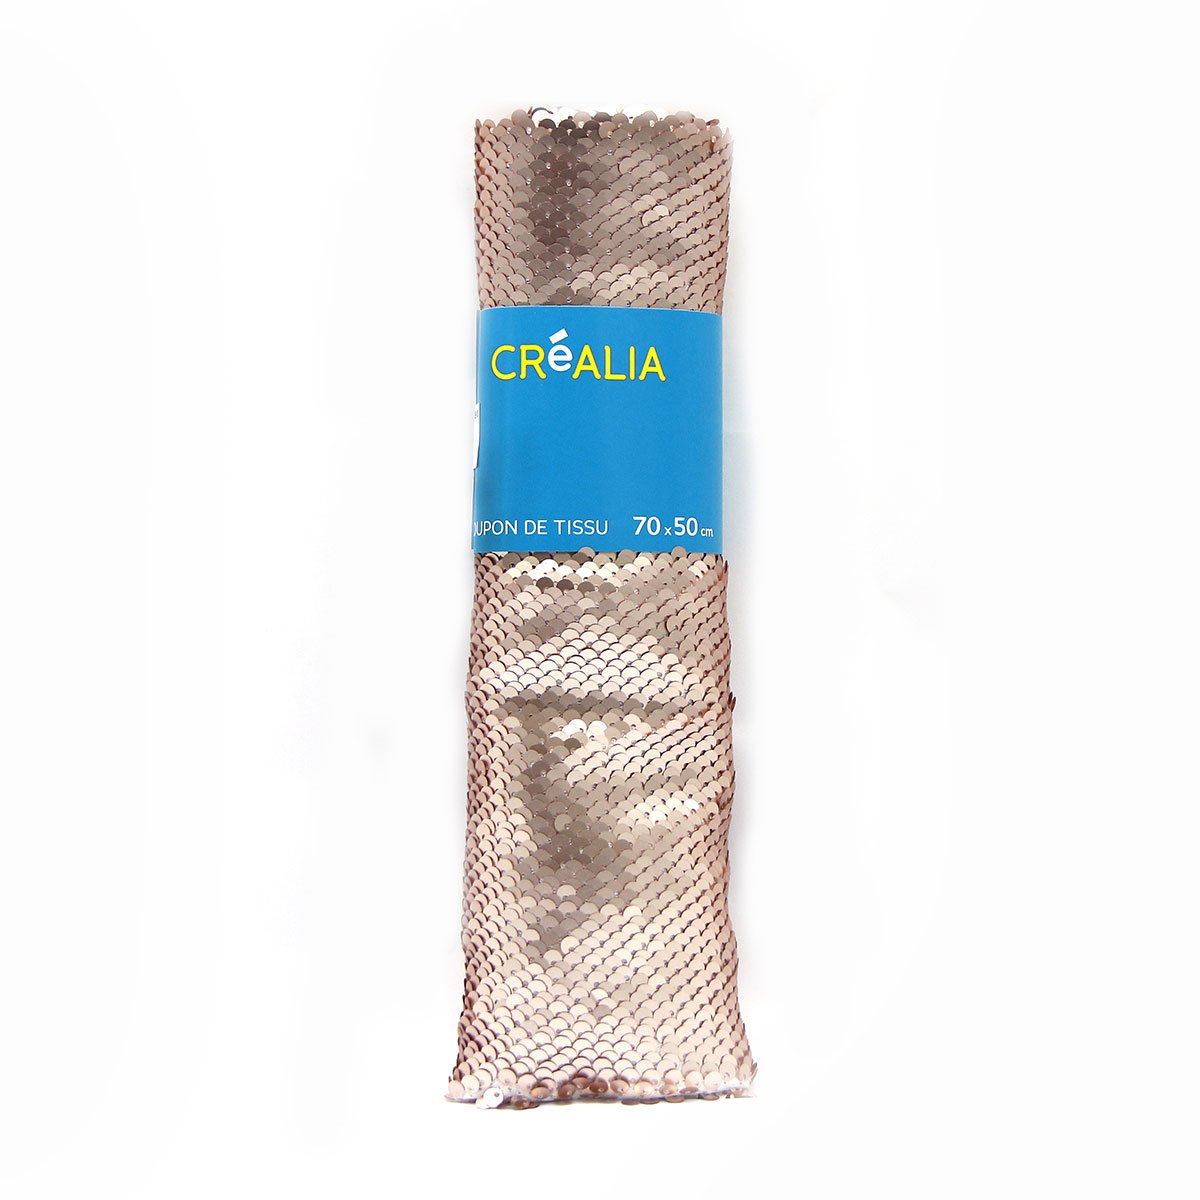 Coupon de tissu 50x70cm - sequins réversibles champagne mats & brillants - Créalia